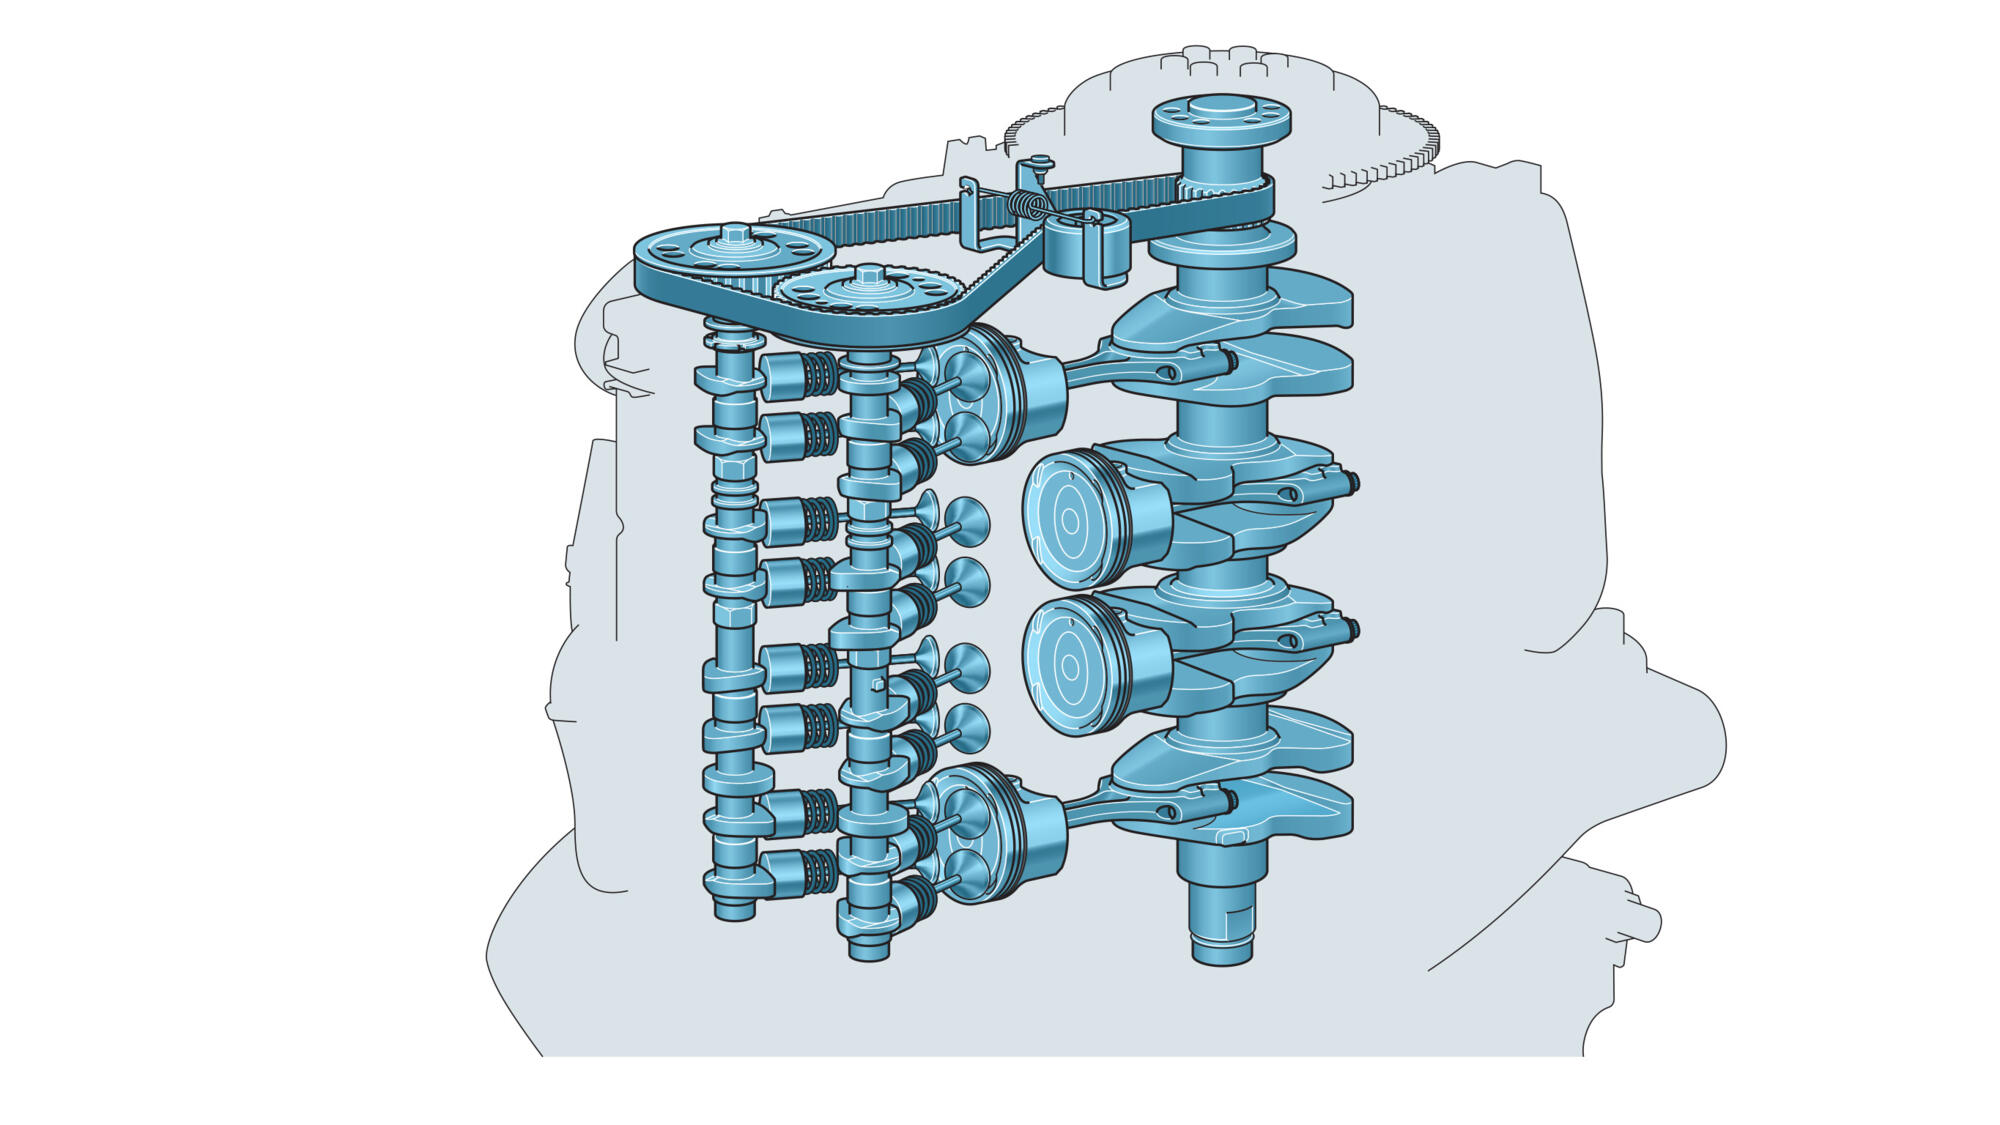 DOHC design with 4 valves per cylinder